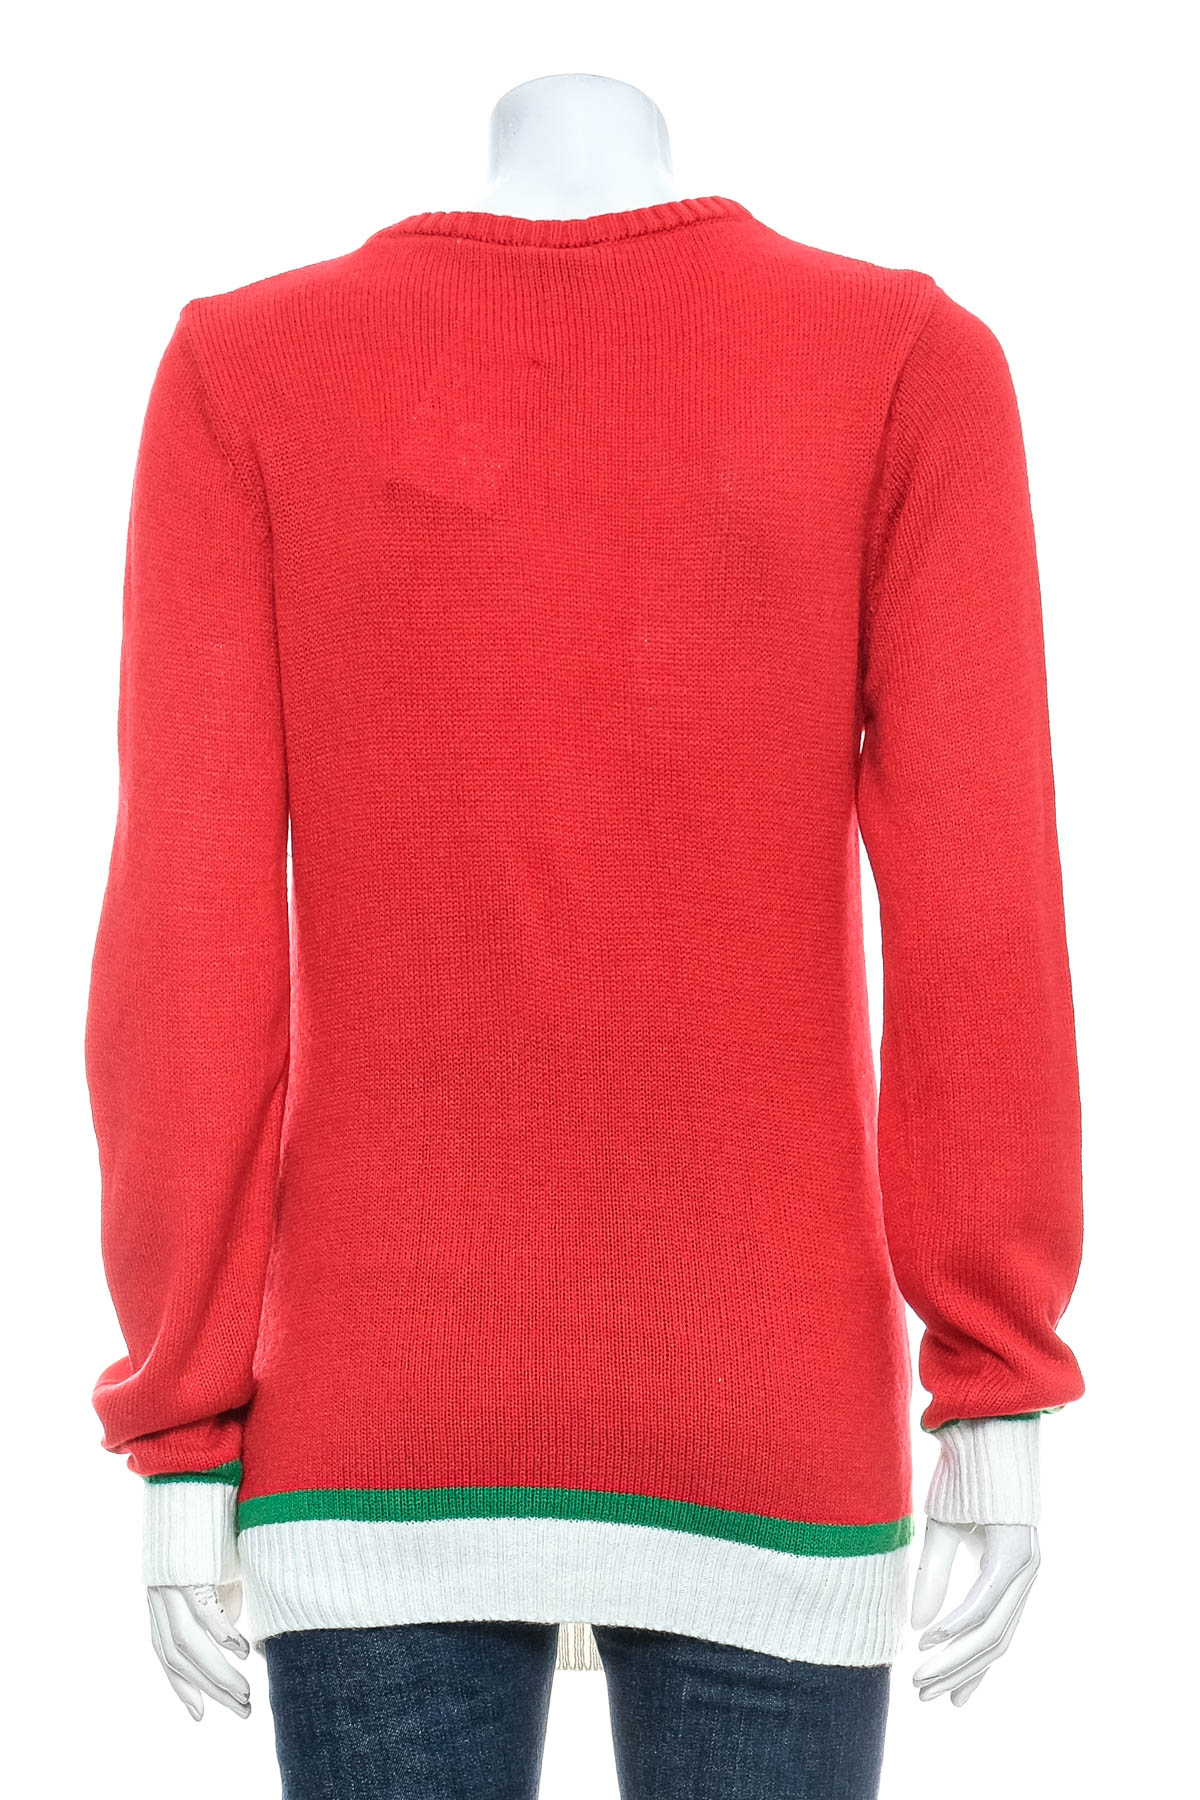 Women's sweater - Avesta - 1